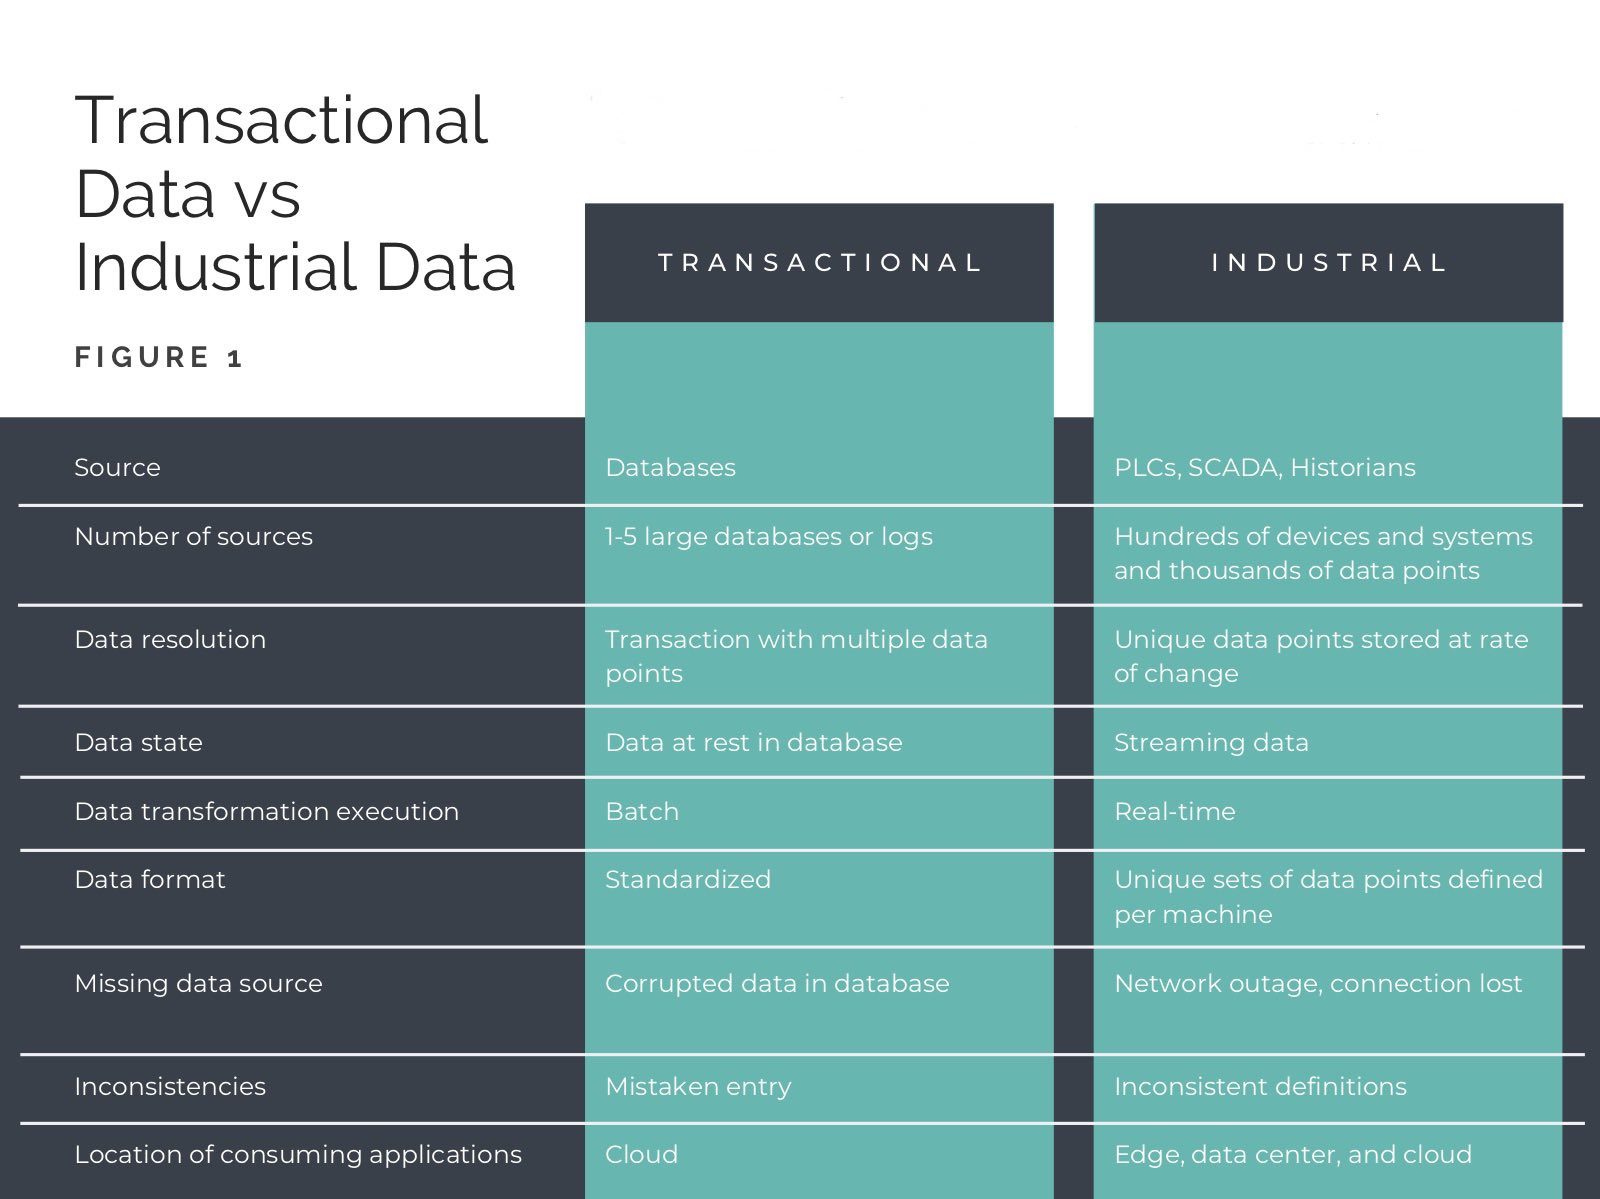 Hình: So sánh khai thác dữ liệu giao dịch với các yêu cầu phức tạp hơn về trích xuất dữ liệu công nghiệp qua một số yếu tố.  Nguồn : HighByte